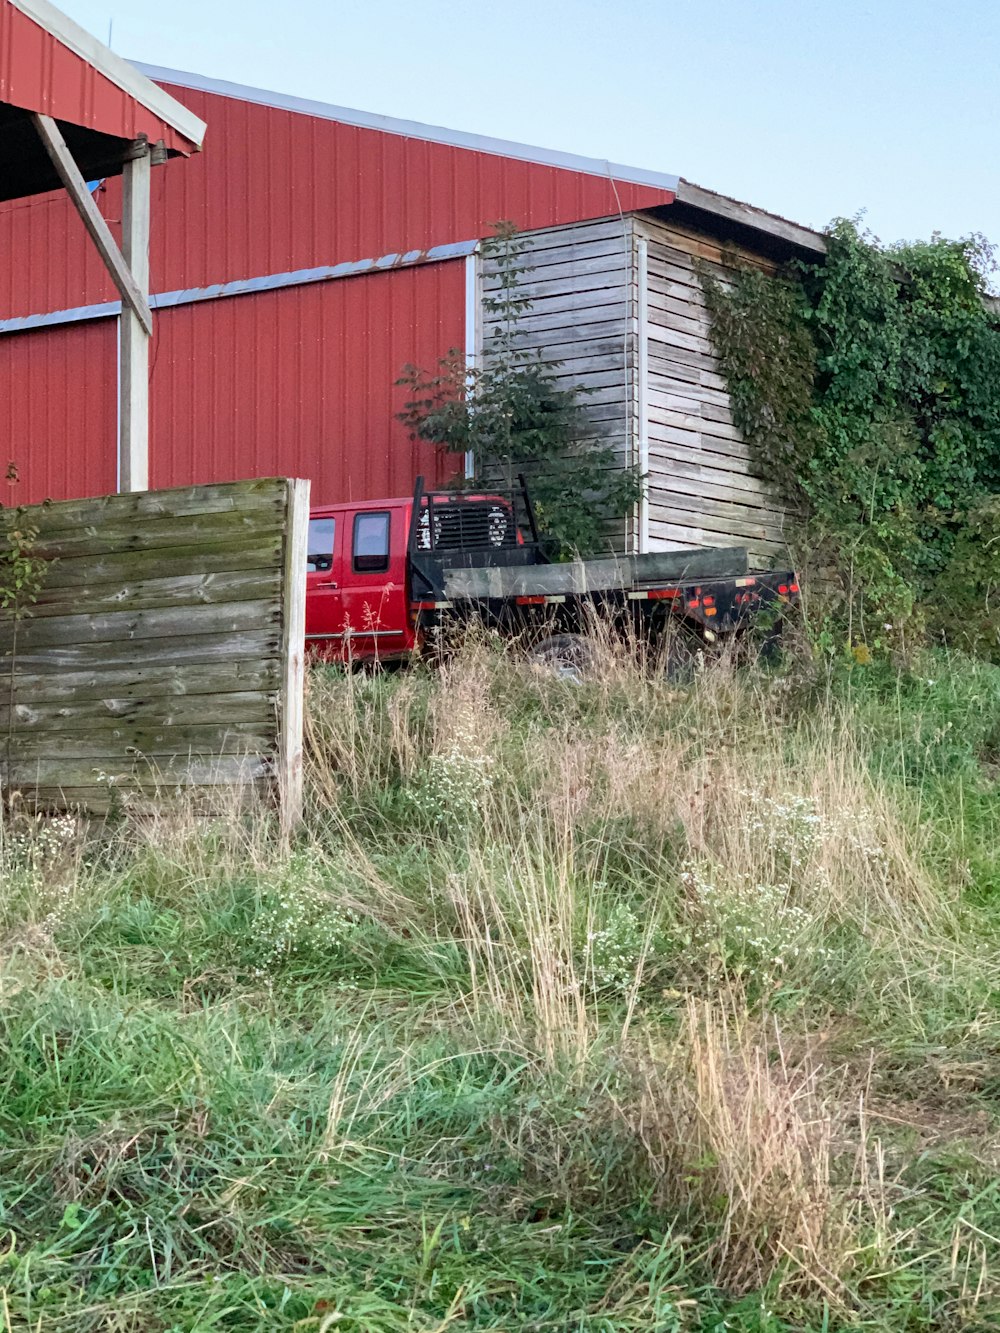 Un camion rouge stationné devant une grange rouge